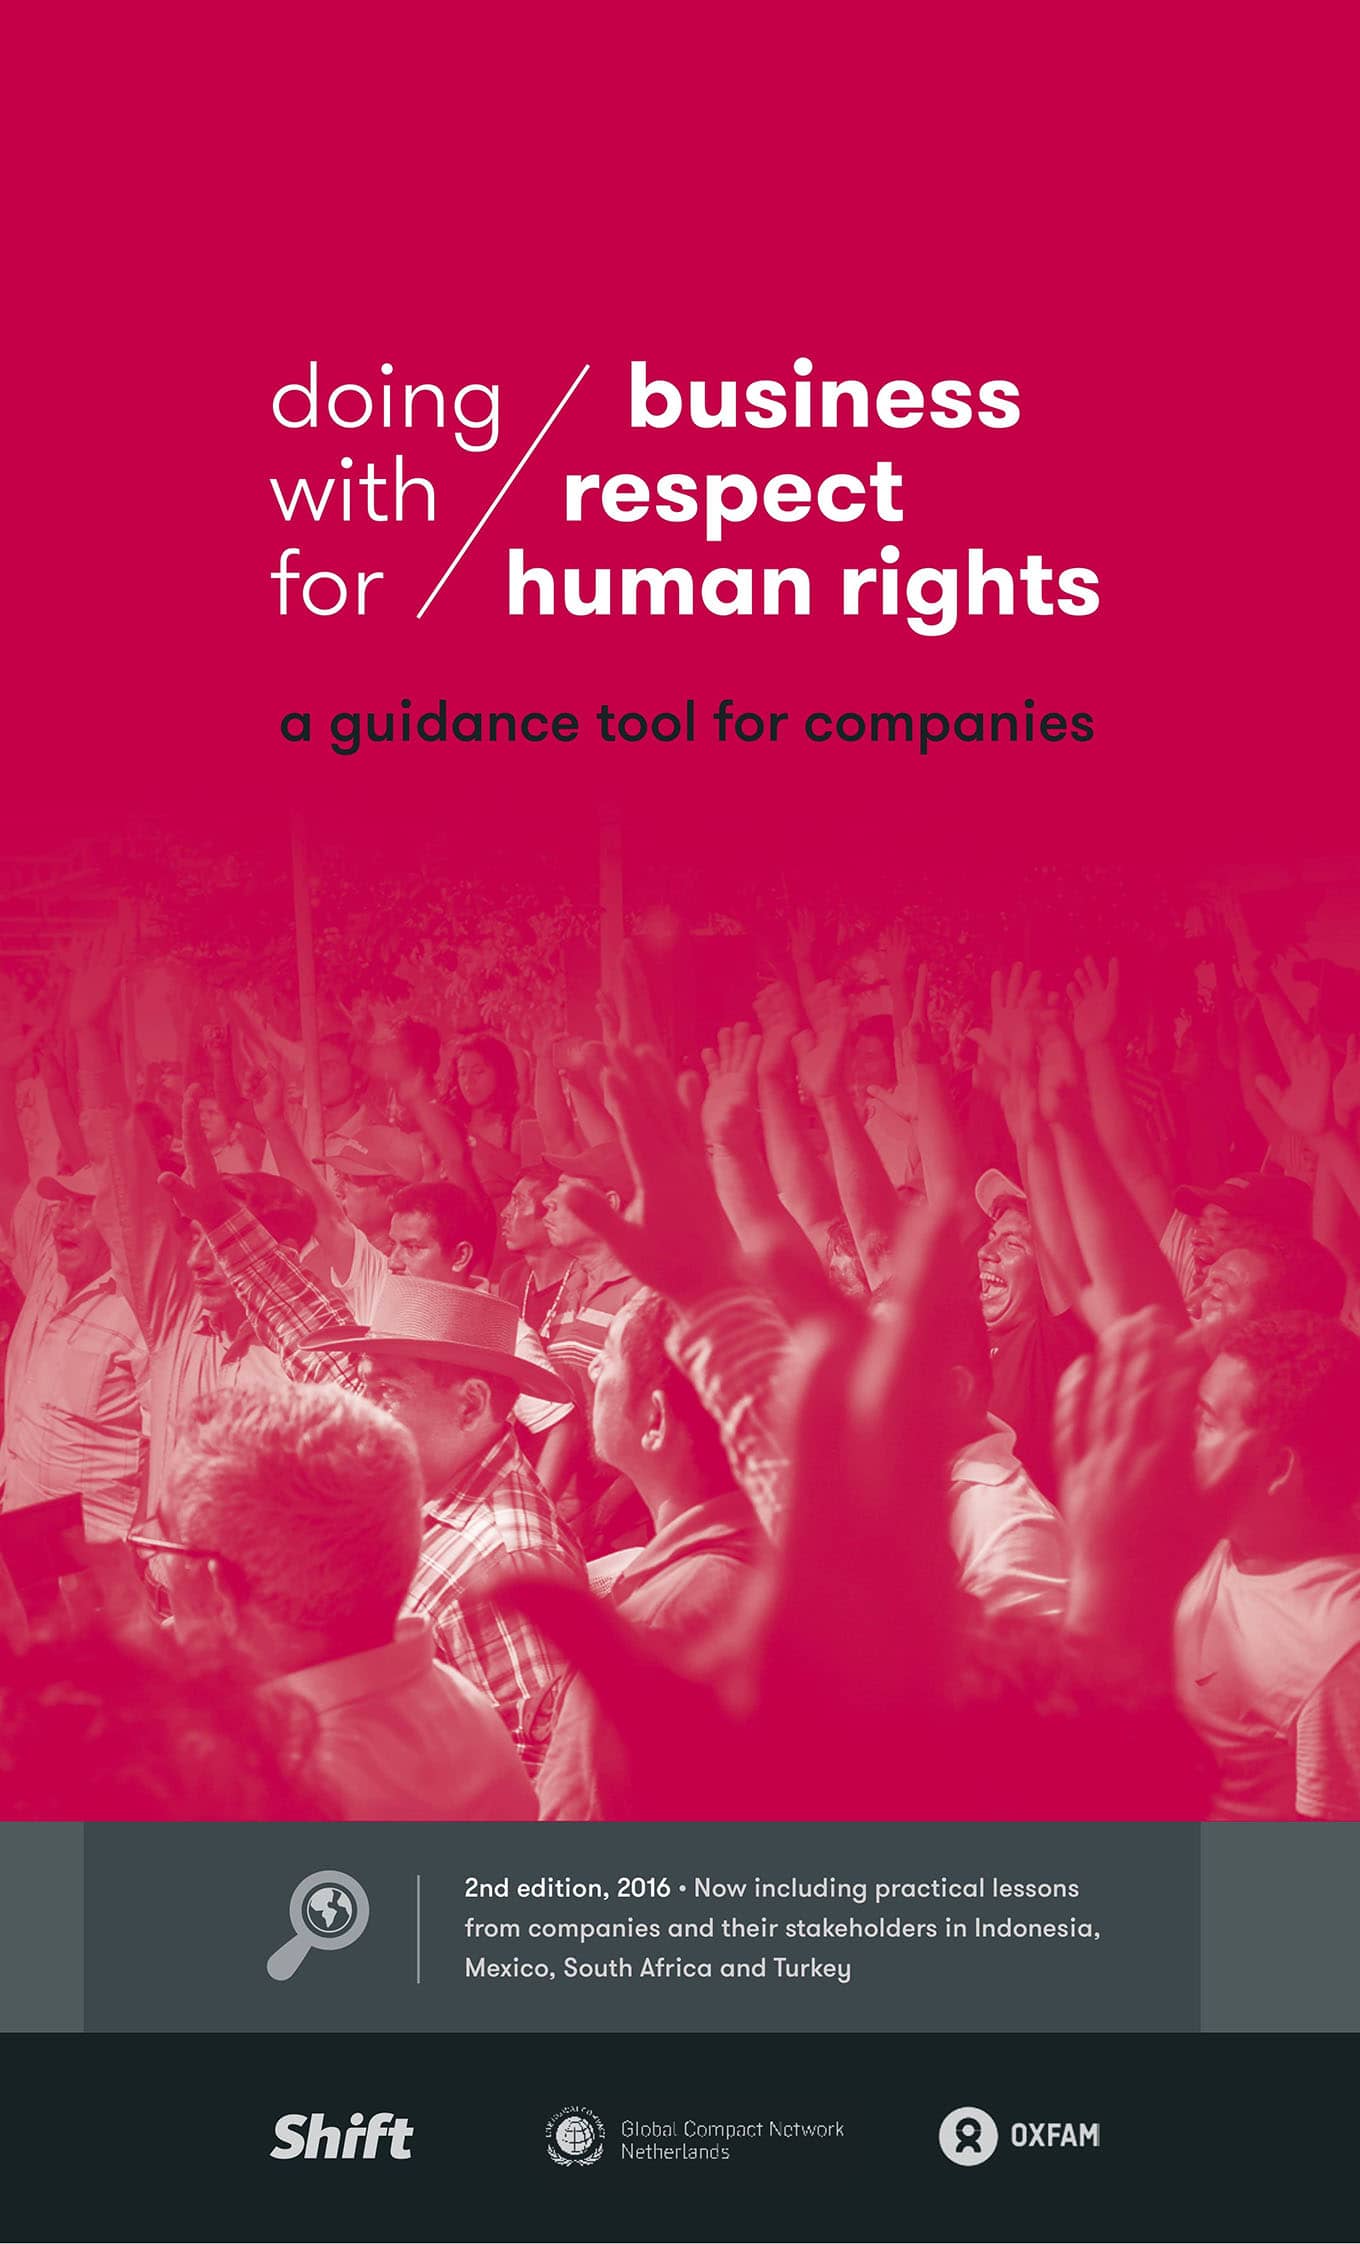 Hacer negocios respetando los derechos humanos